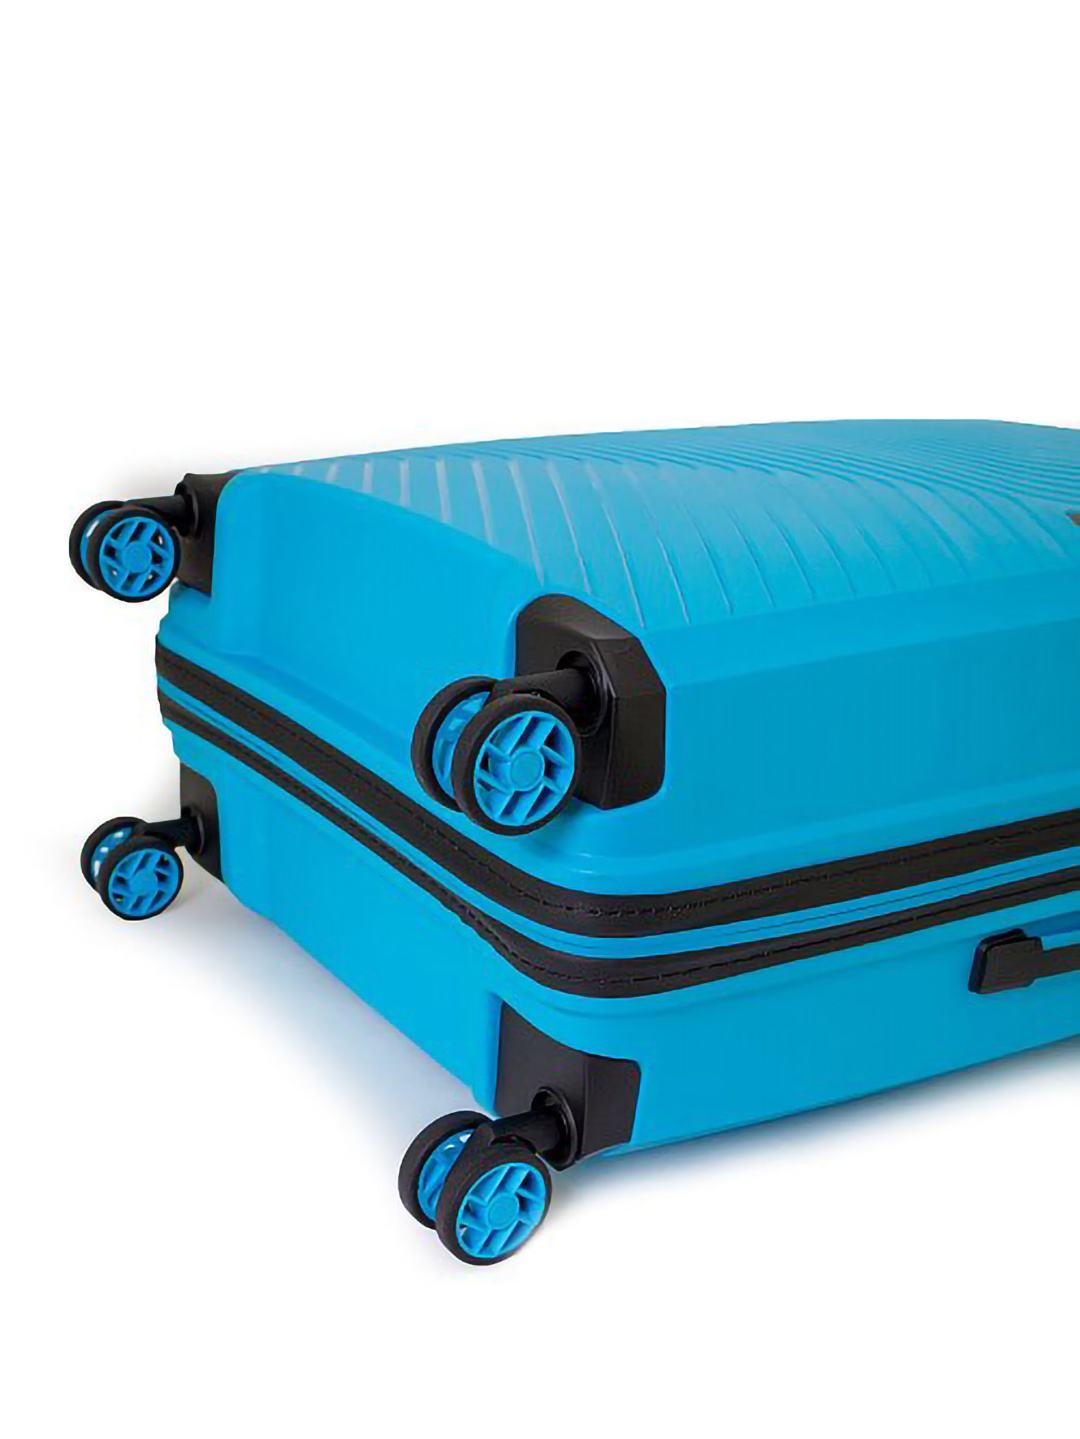 Фото Средний чемодан на двойных колесах серии Delight Чемоданы